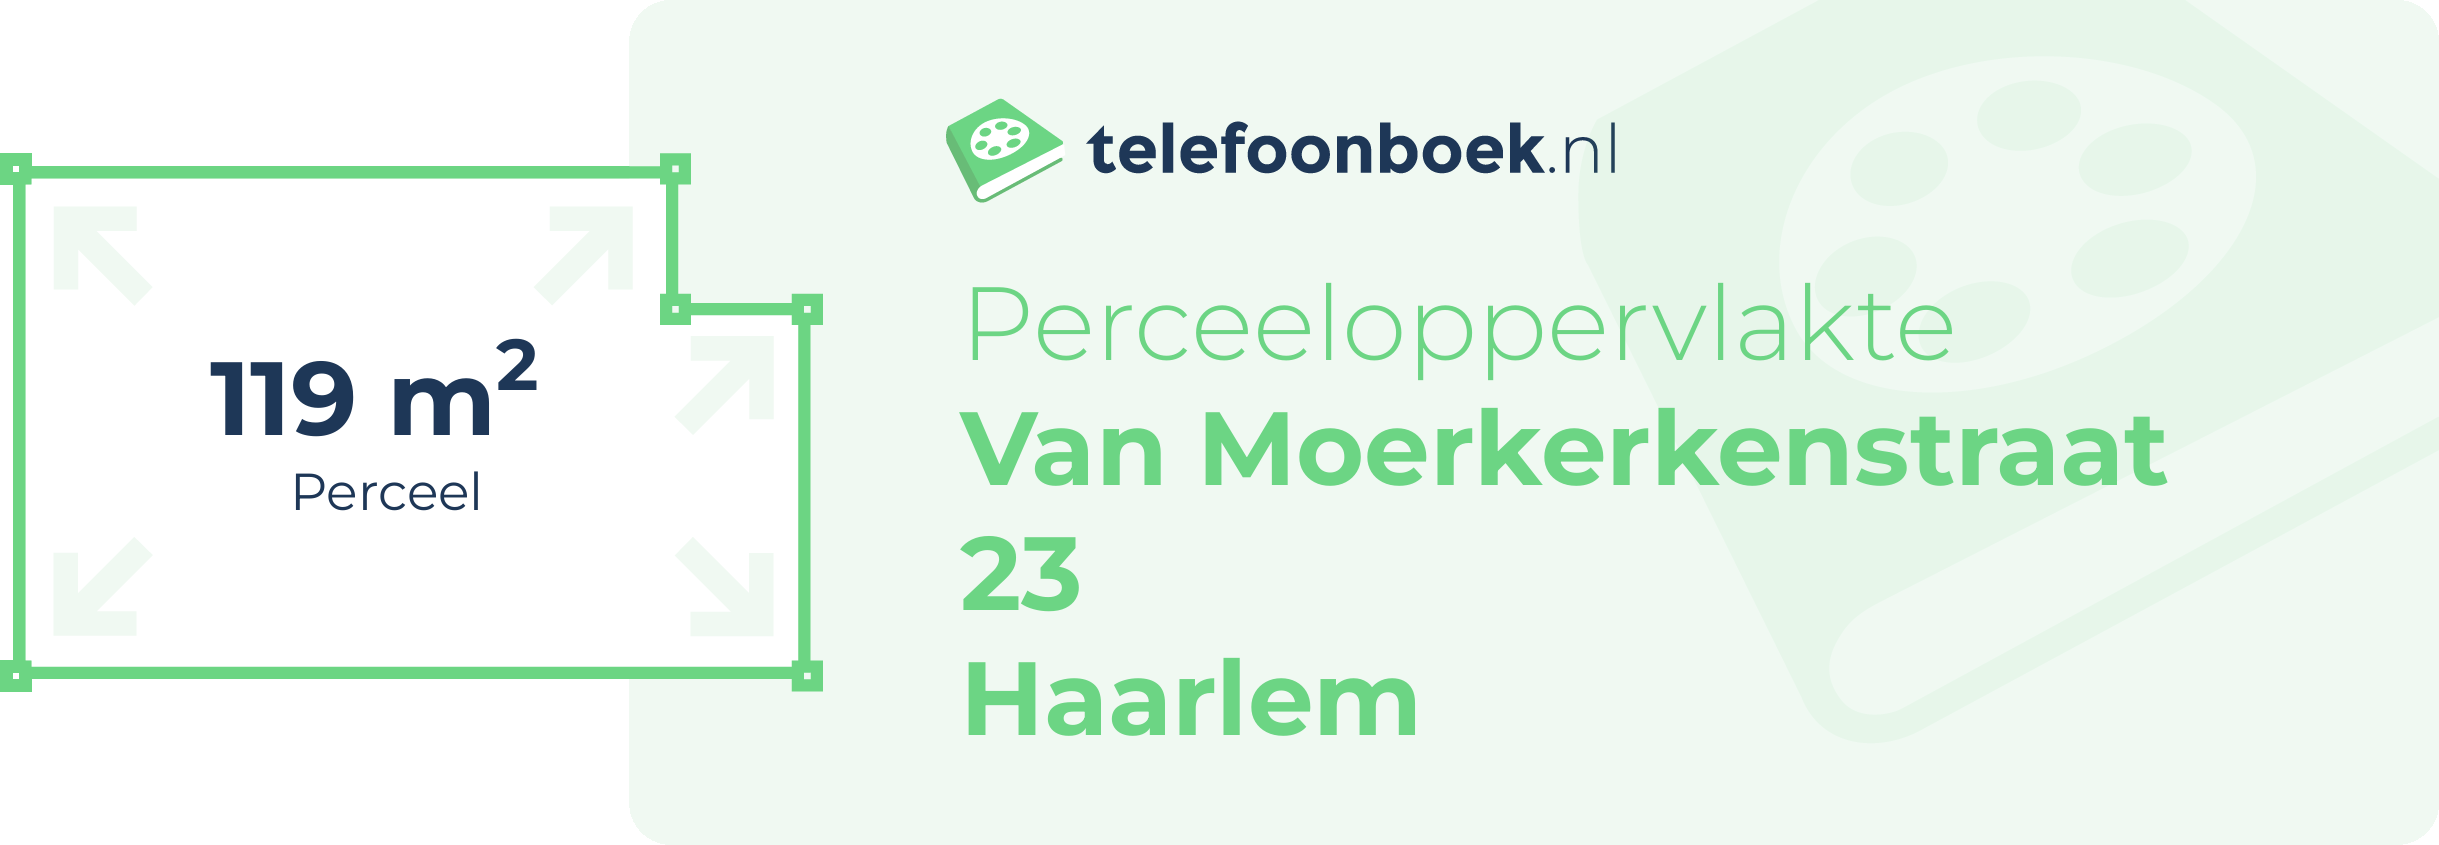 Perceeloppervlakte Van Moerkerkenstraat 23 Haarlem